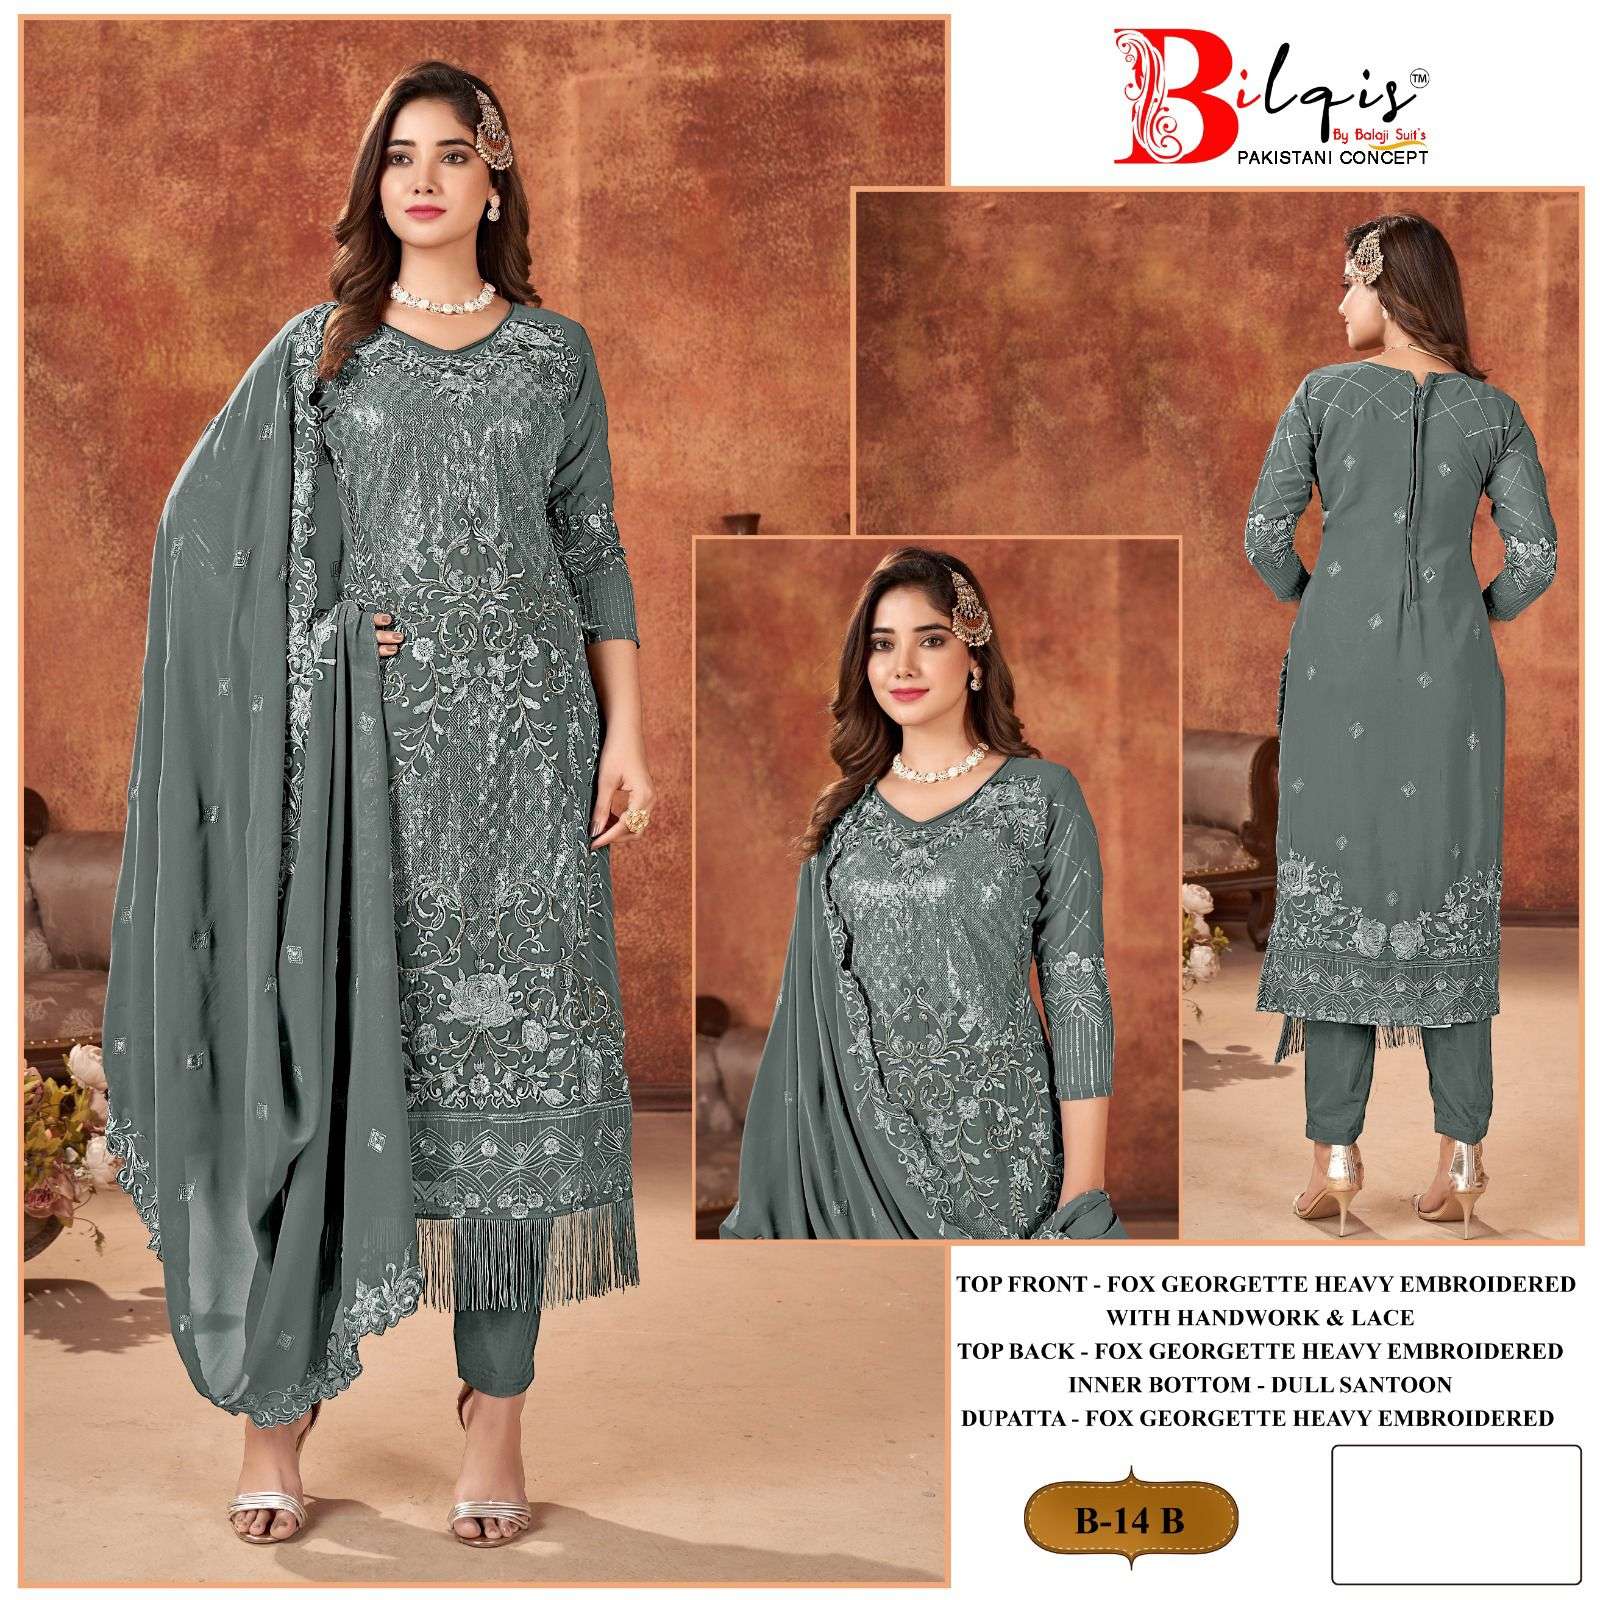 Bilqis B 14 Faux Georgette Pakistani Suits Wholesale catalog